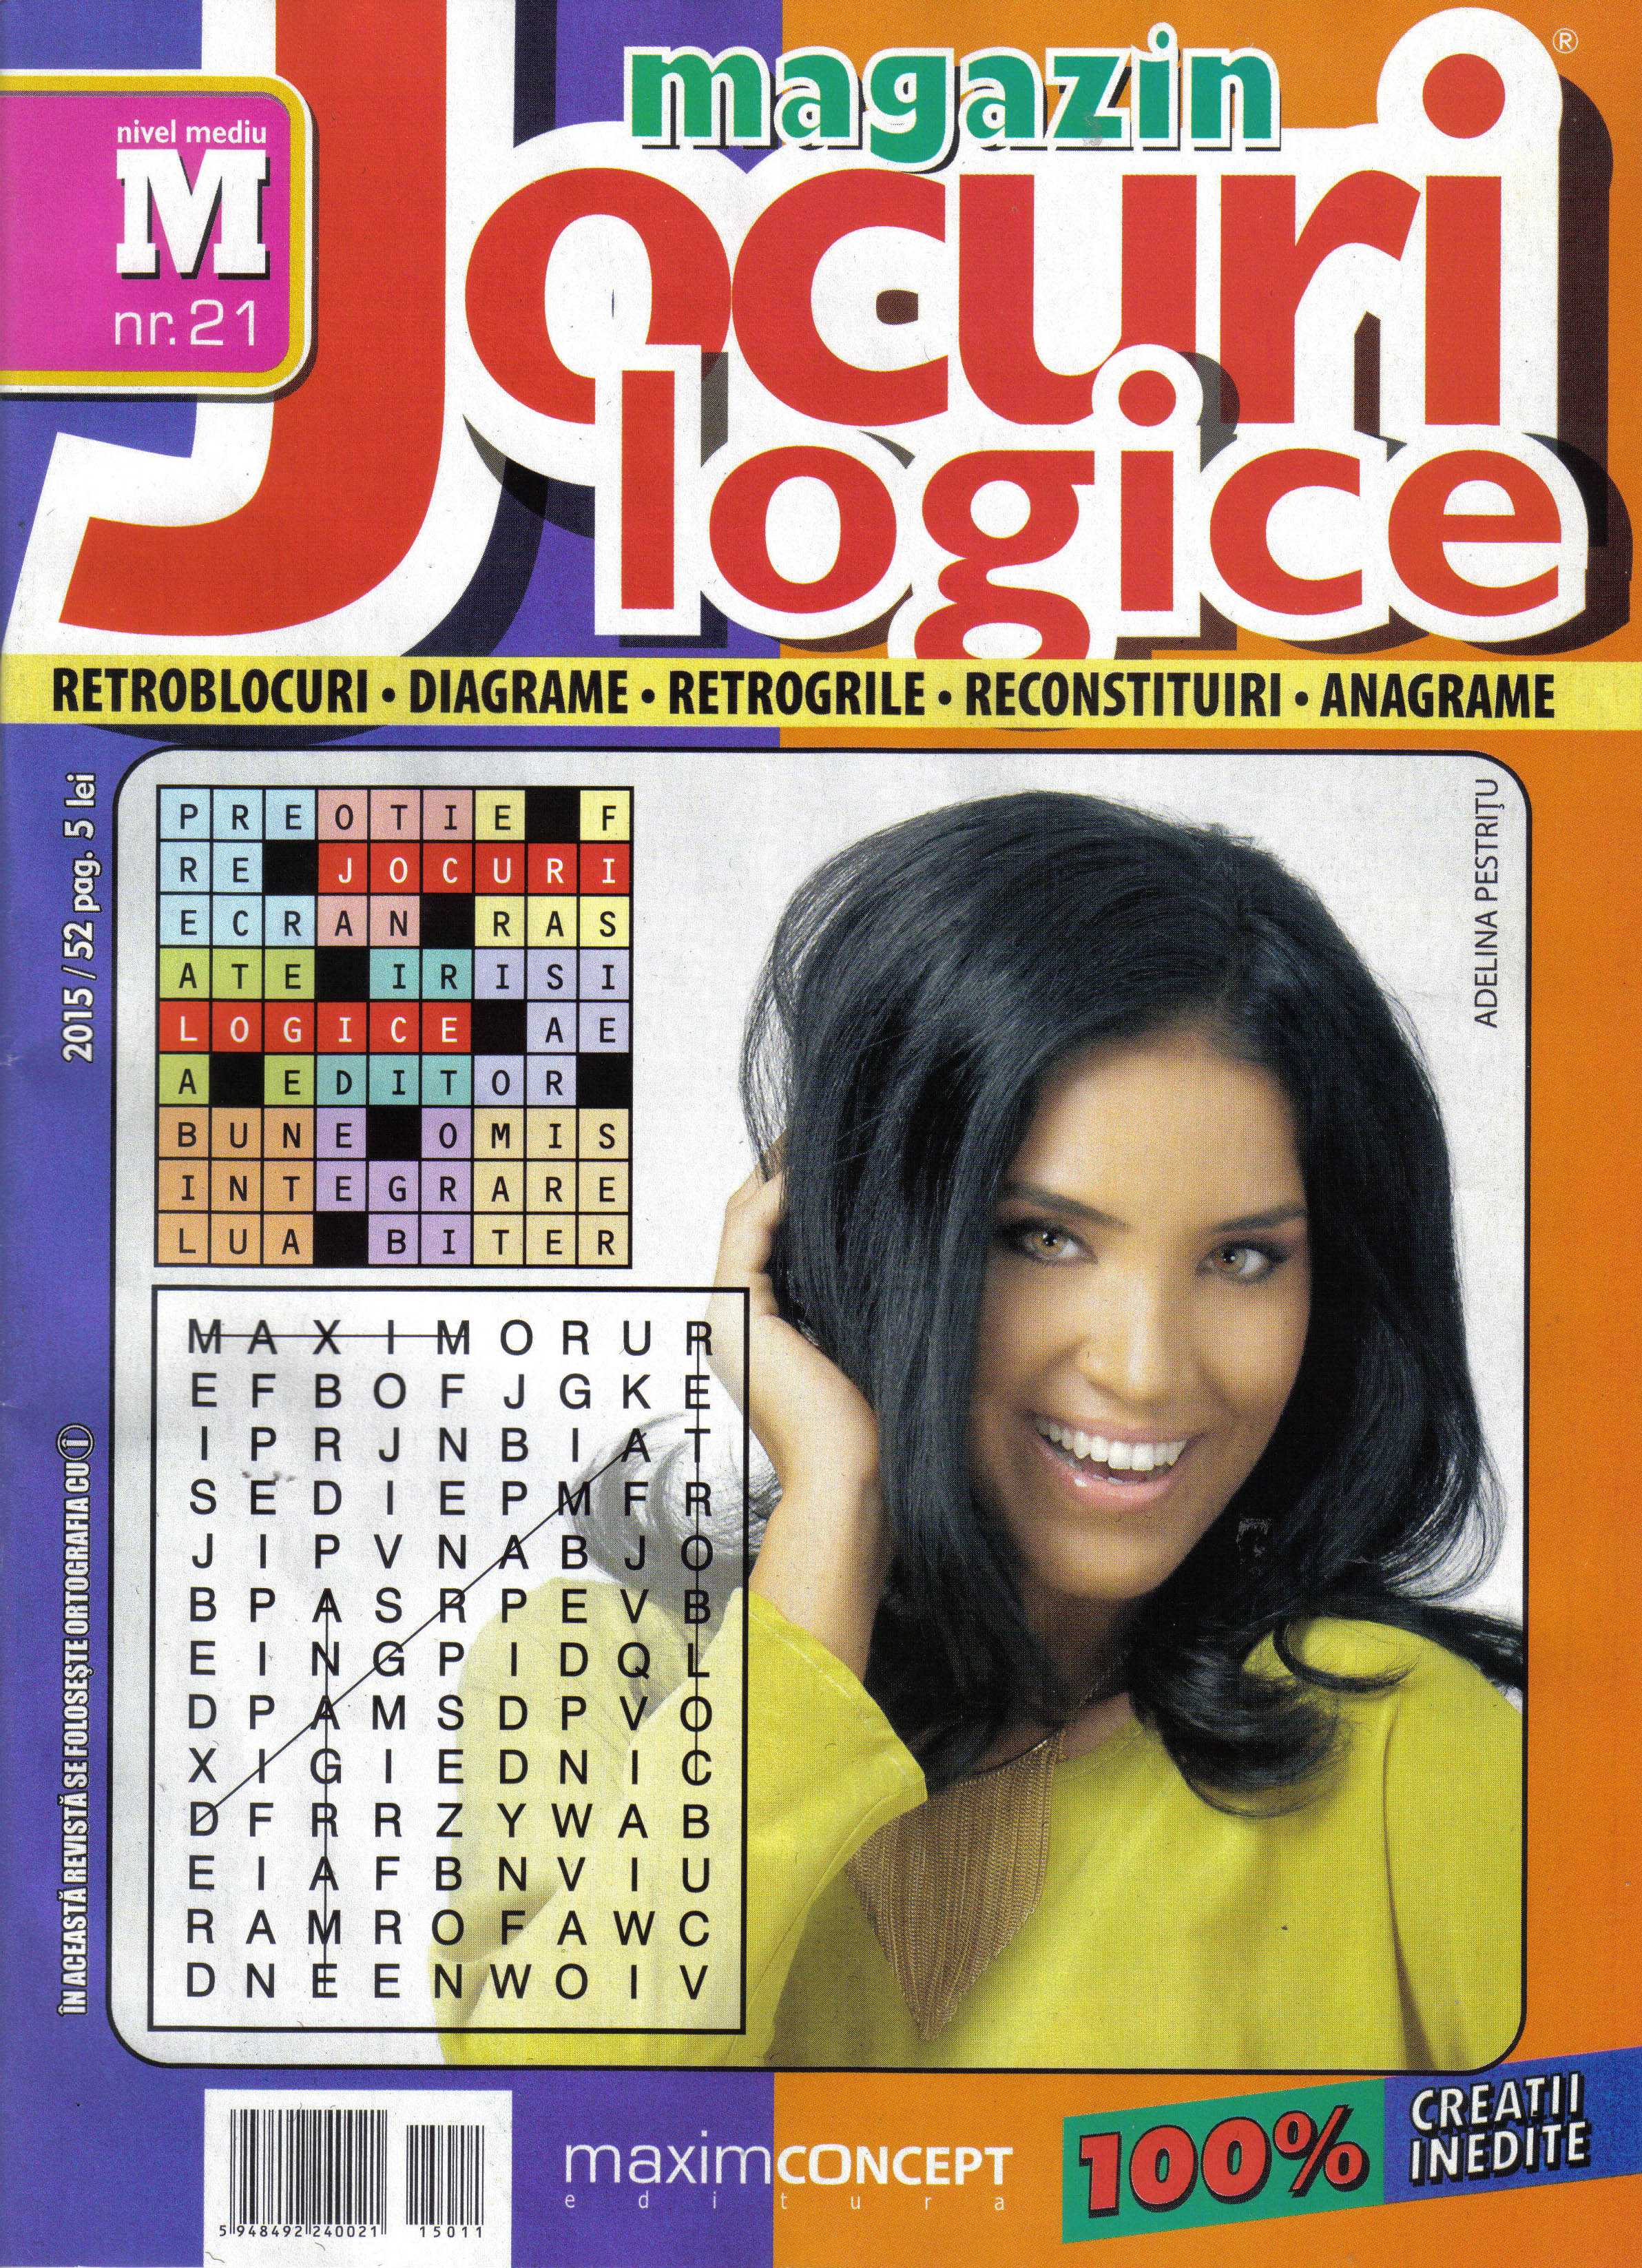 Magazin Jocuri logice, noiembrie 2015